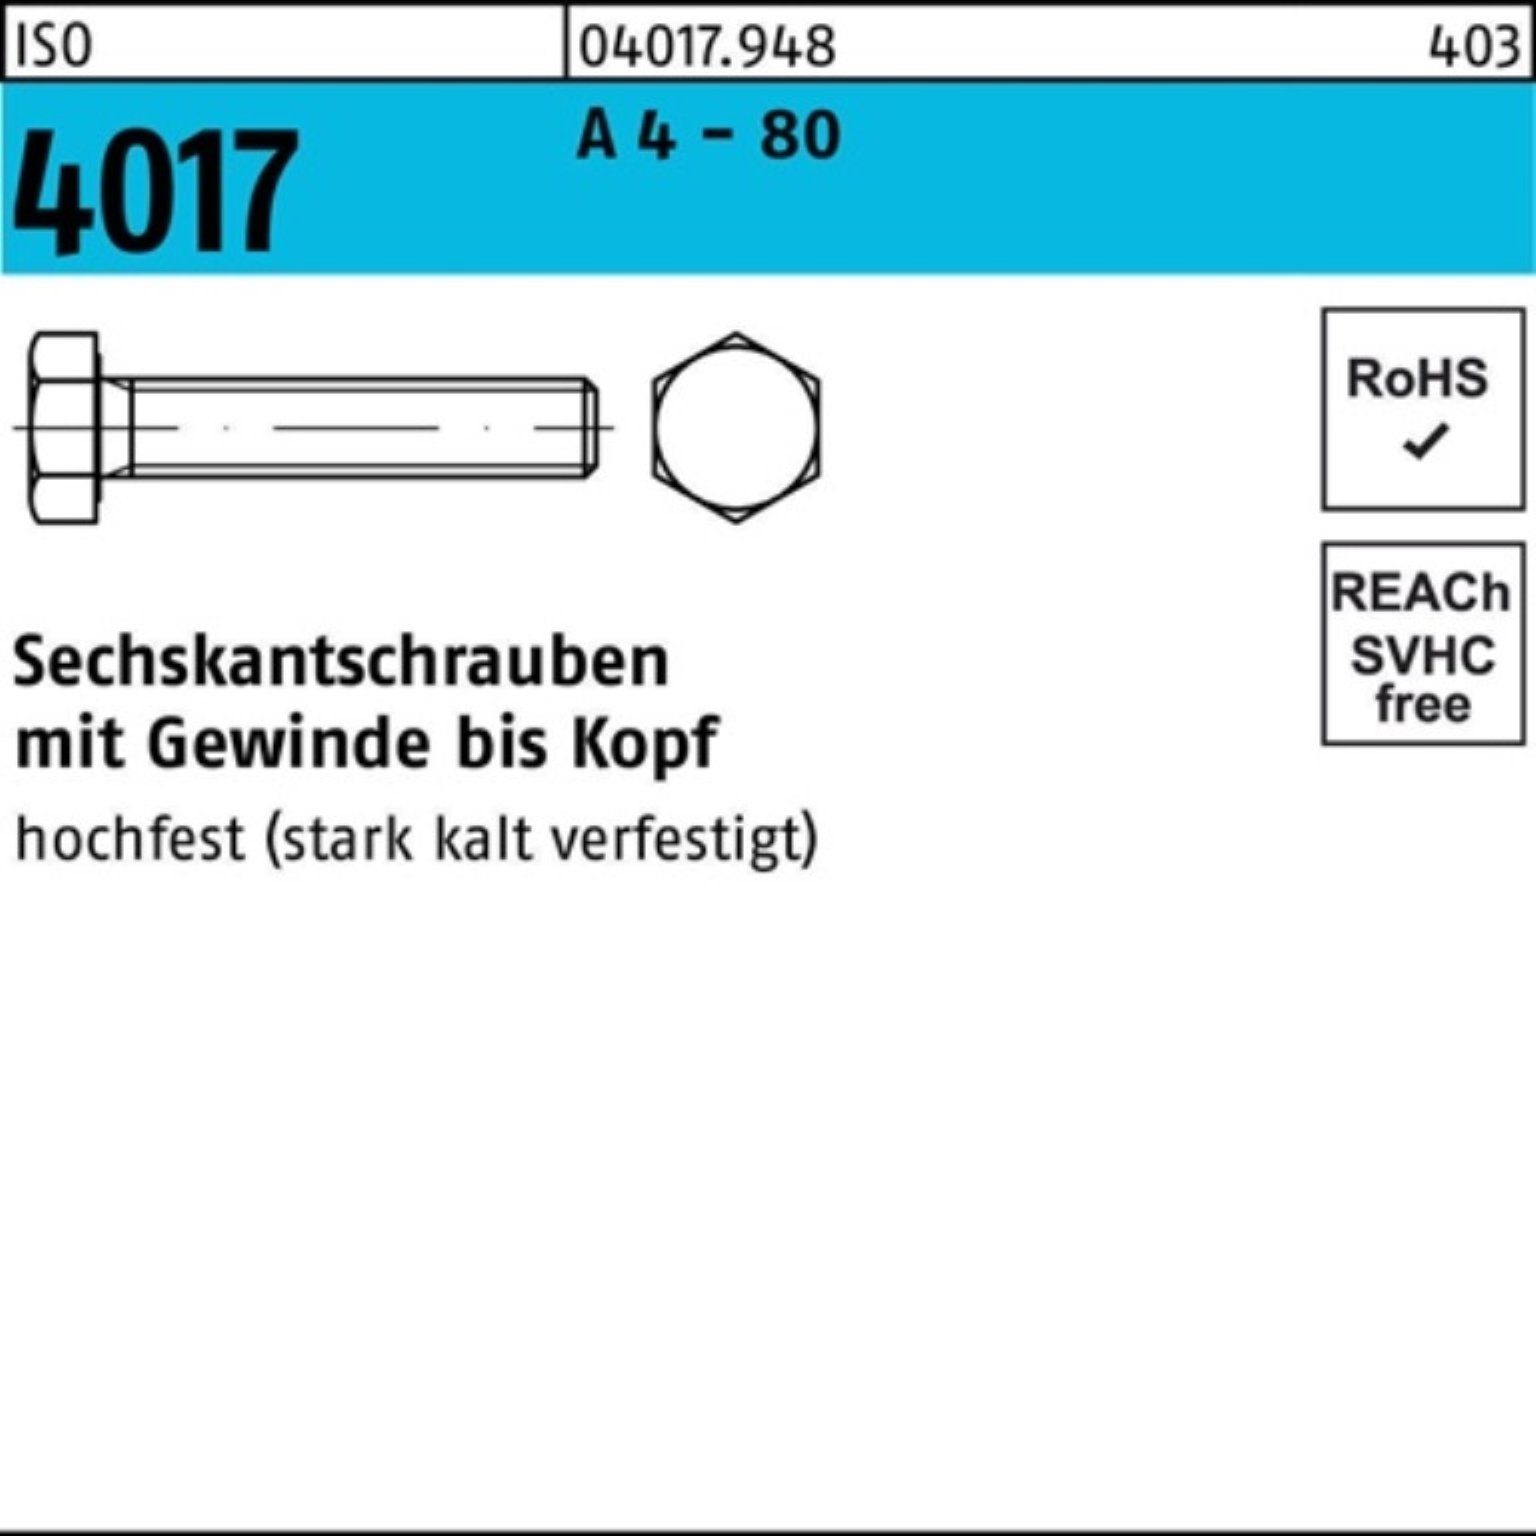 Bufab Sechskantschraube 100er Pack Sechskantschraube ISO 4017 VG M10x 50 A 4 - 80 100 Stück I